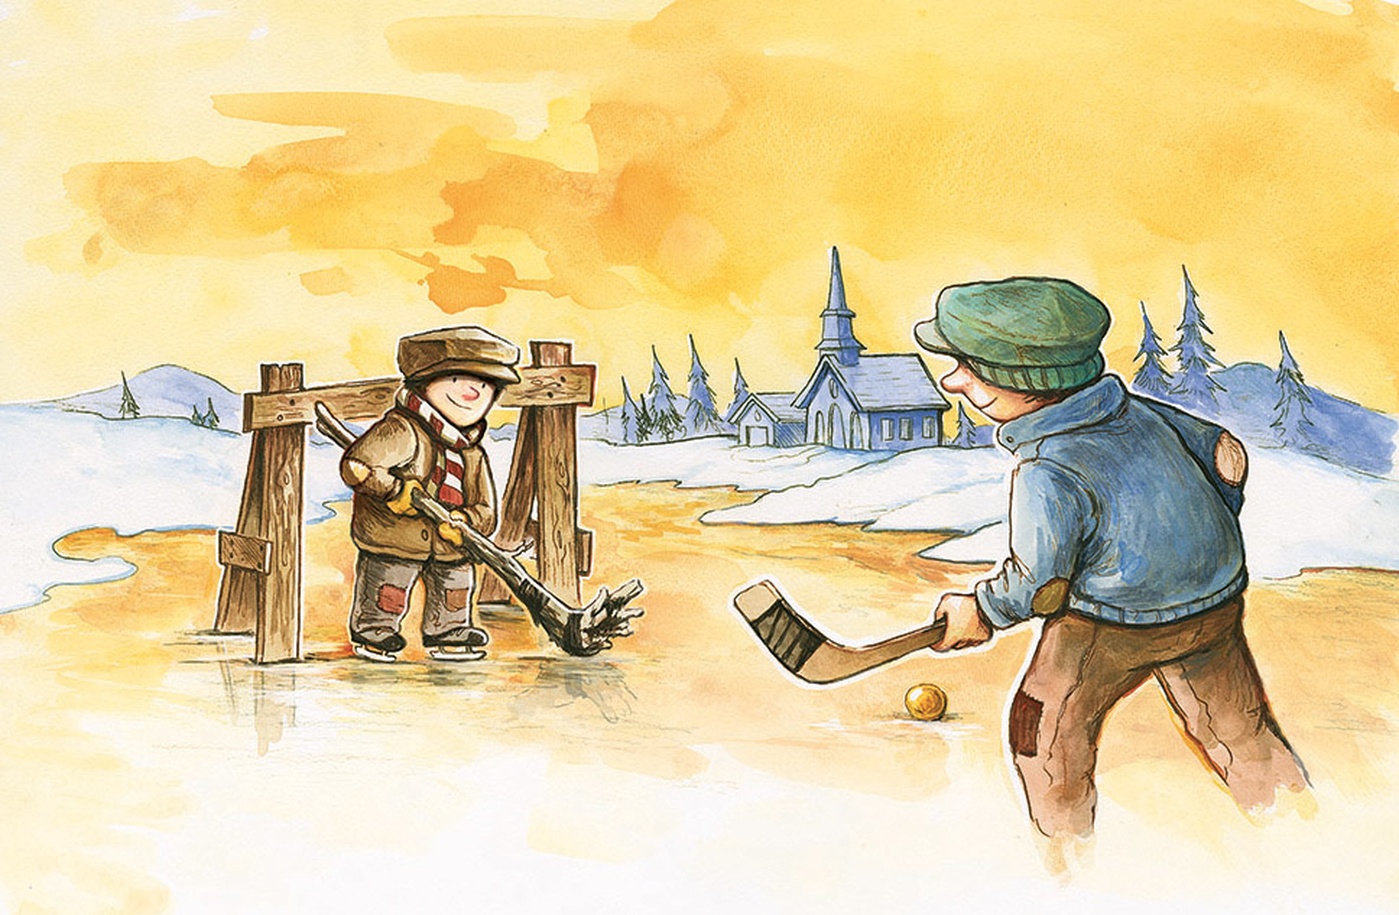 Felix Girard - That's Not Hockey! - Illustration intérieure